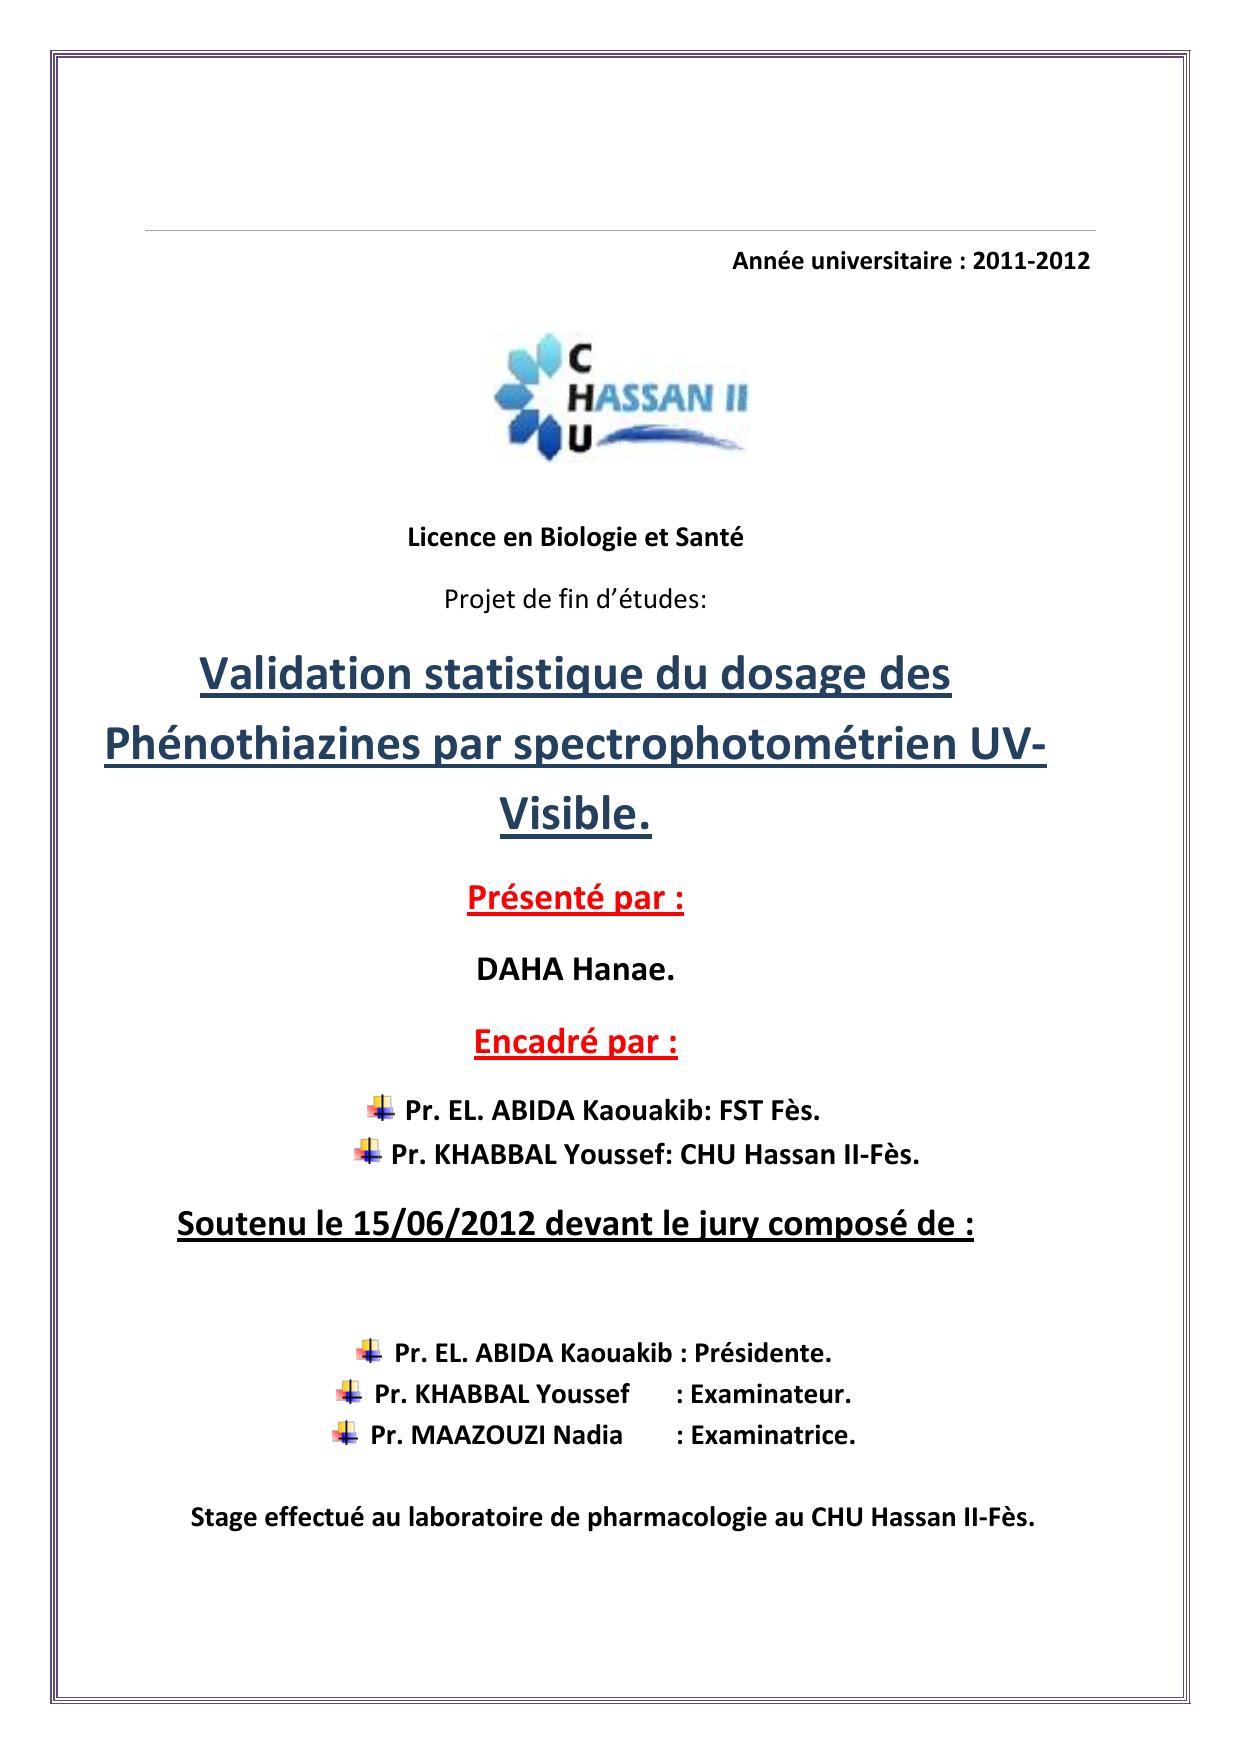 Validation statistique du dosage des Phénothiazines par spectrophotométrien UV-Visible.